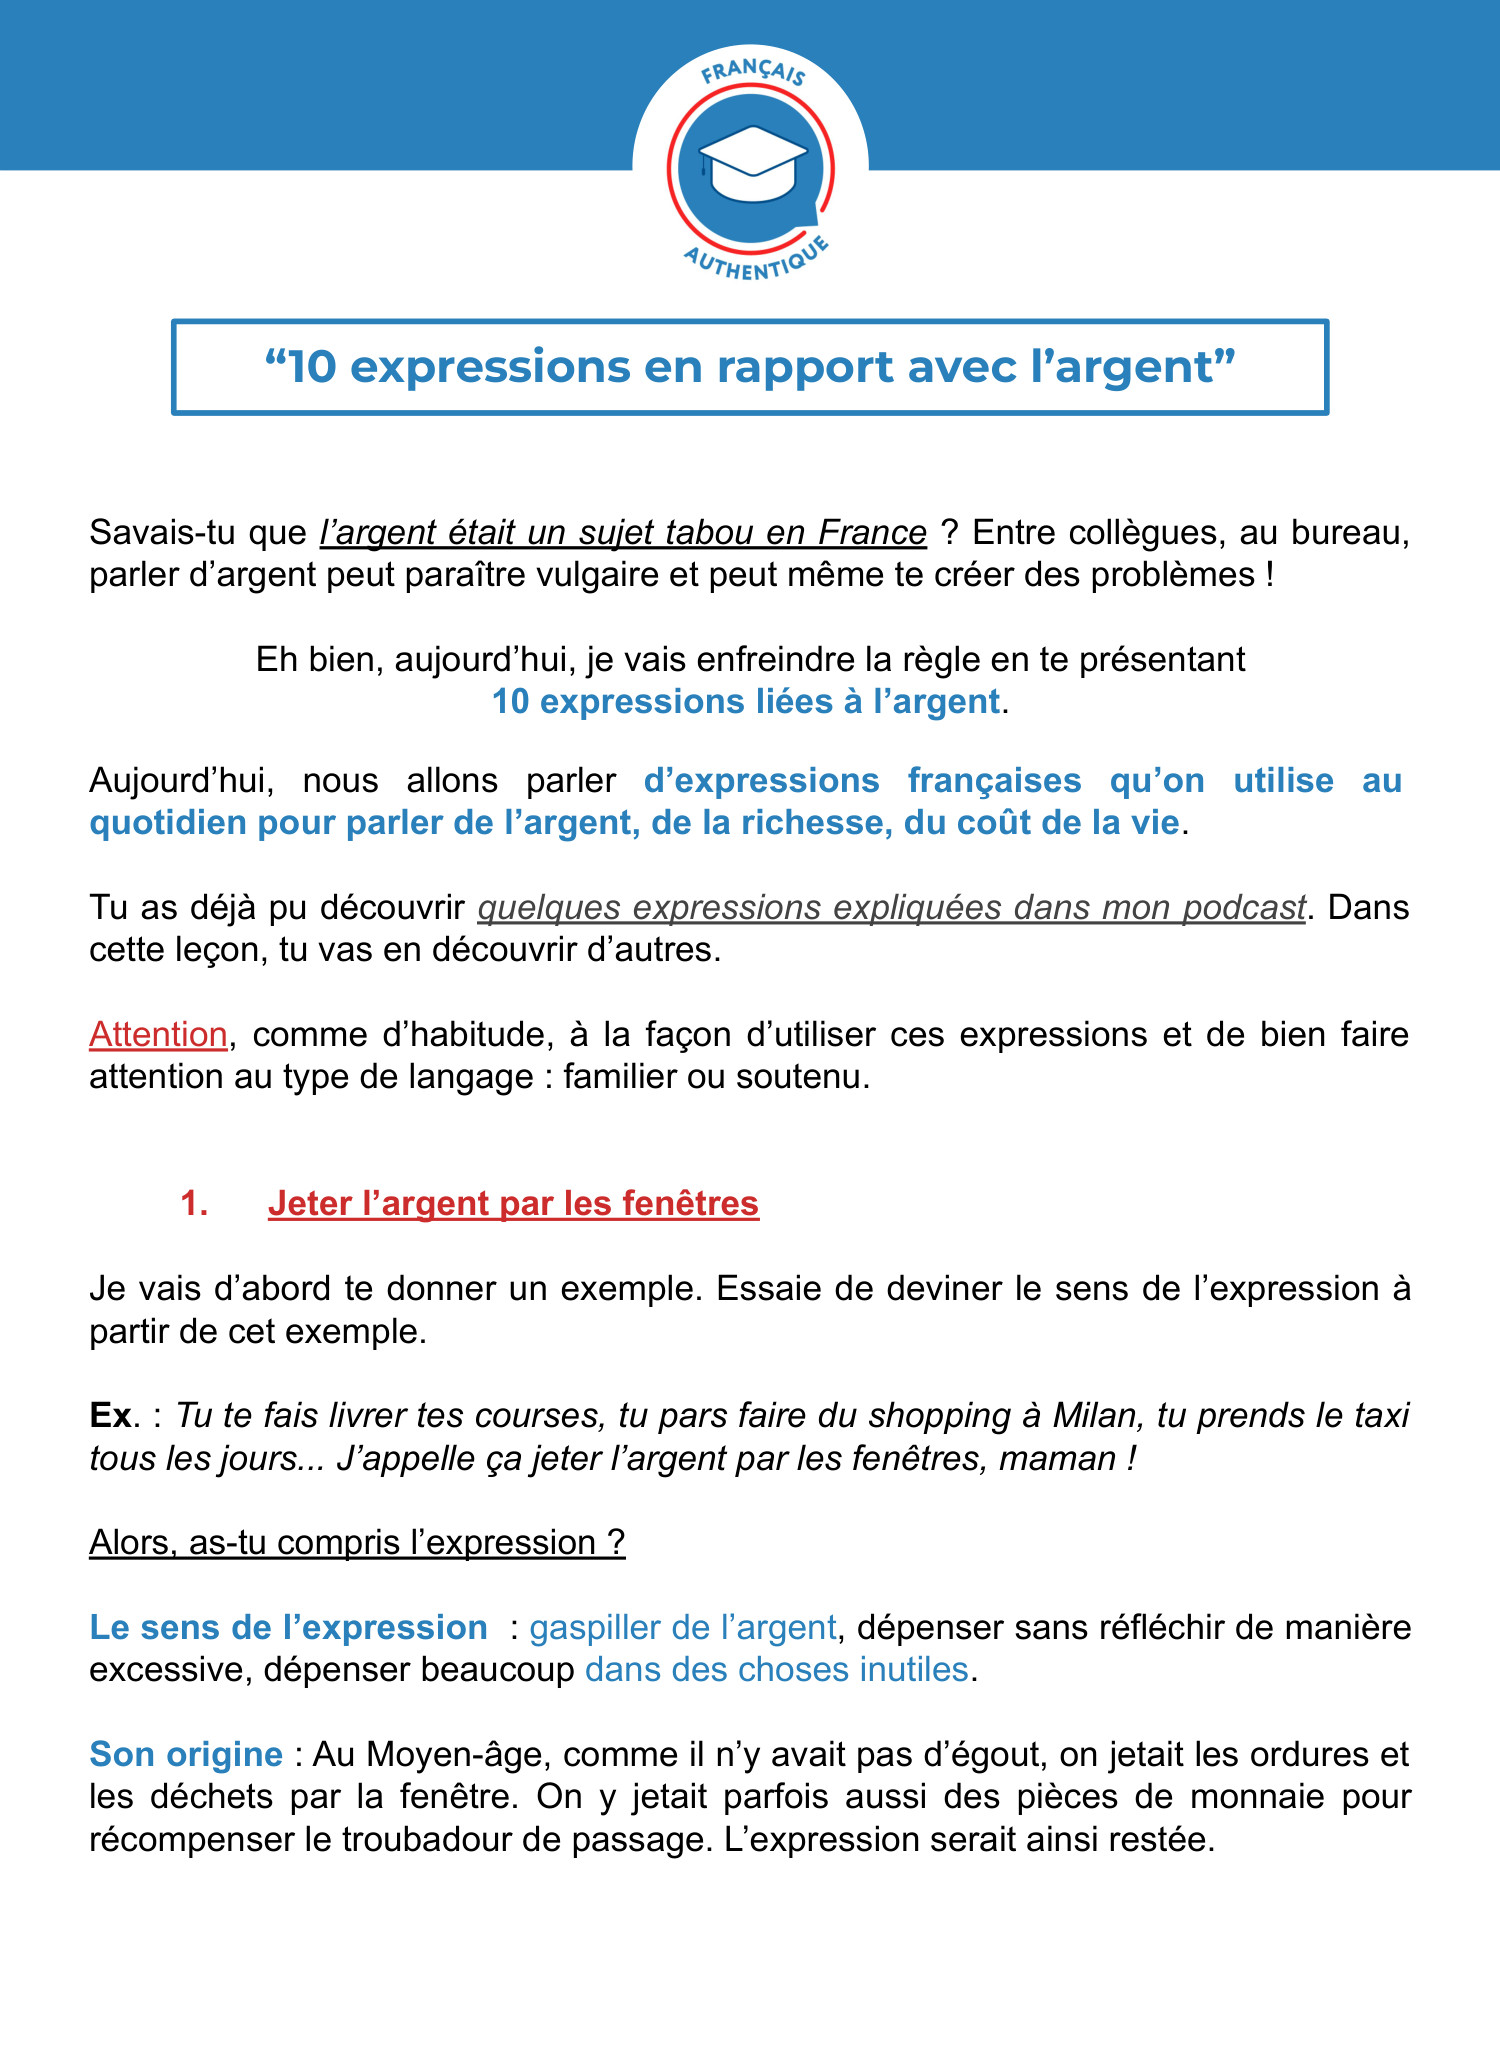 L'argent dans les expressions françaises : les français et l'argent